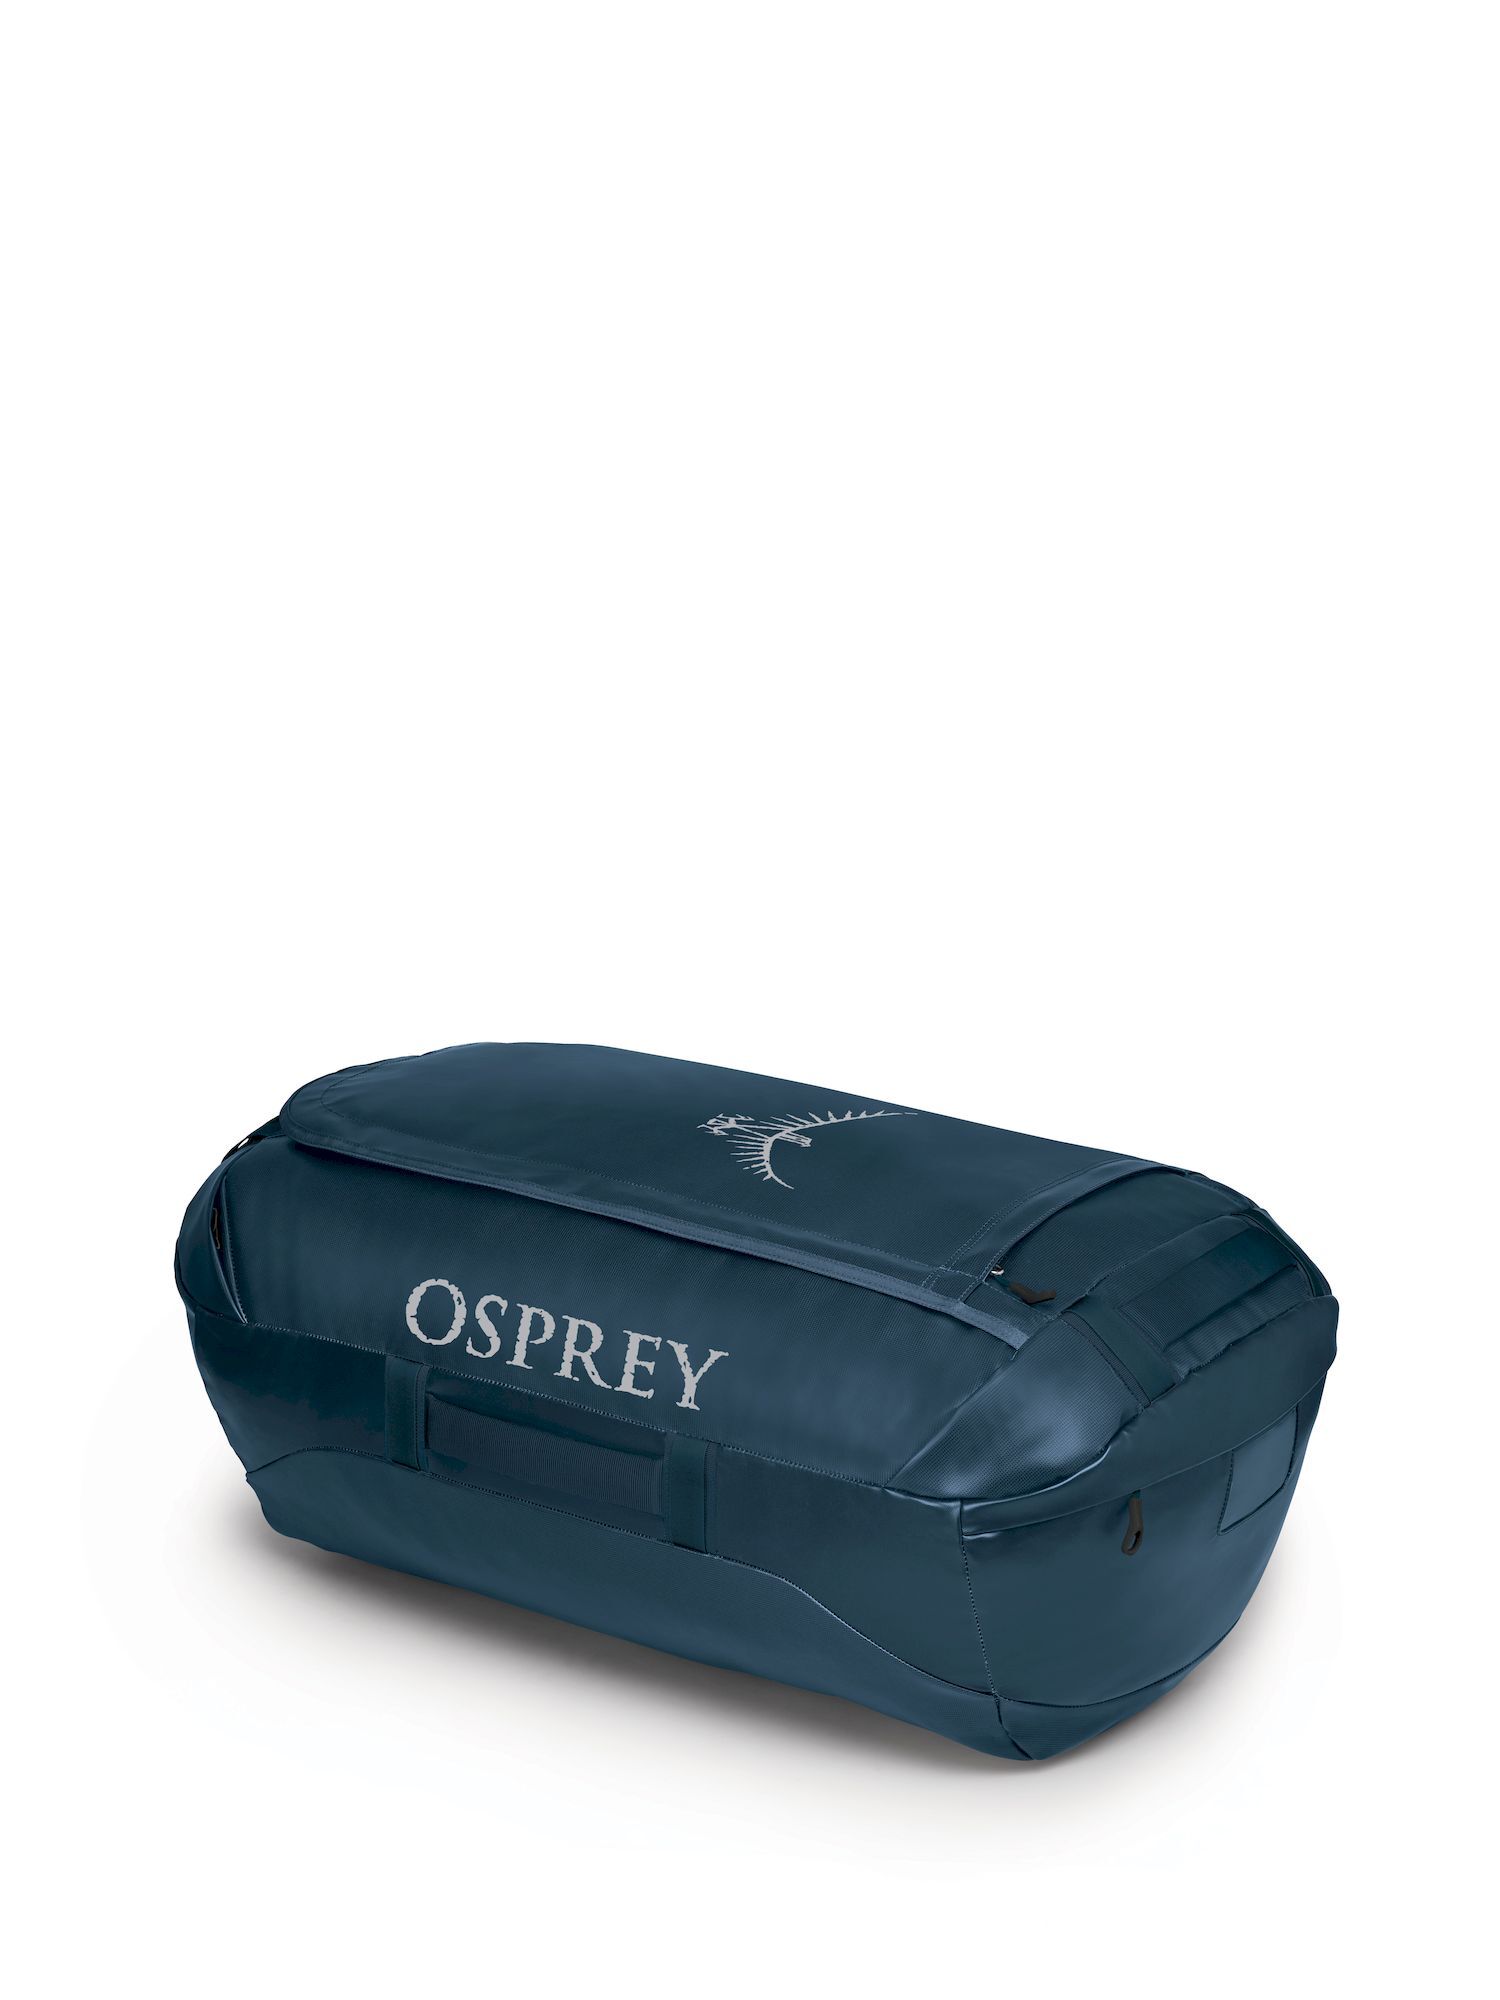 Osprey - Transporter 95 - Travel bag